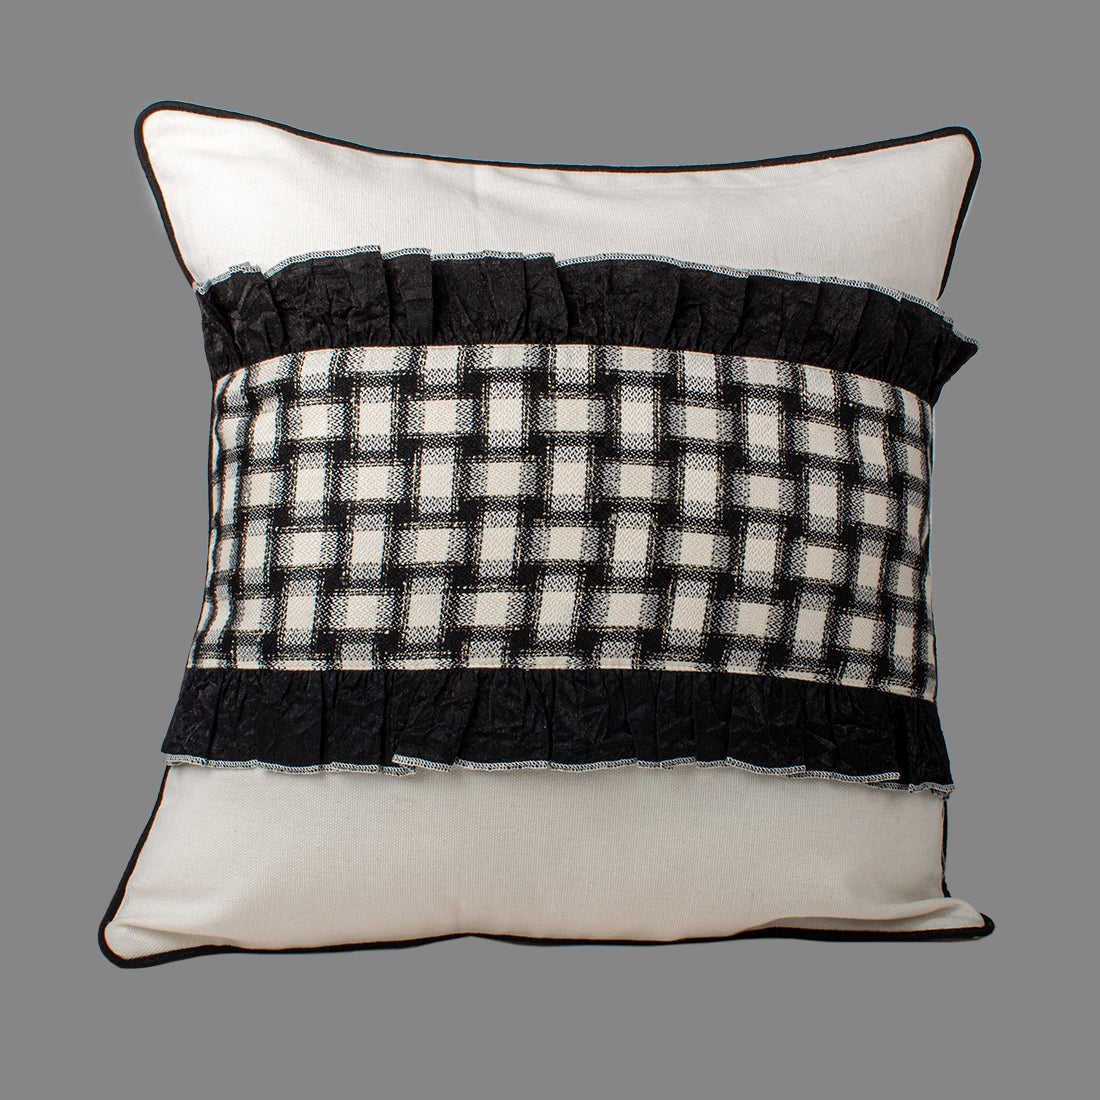 Cushion Cover-Black n White Checks